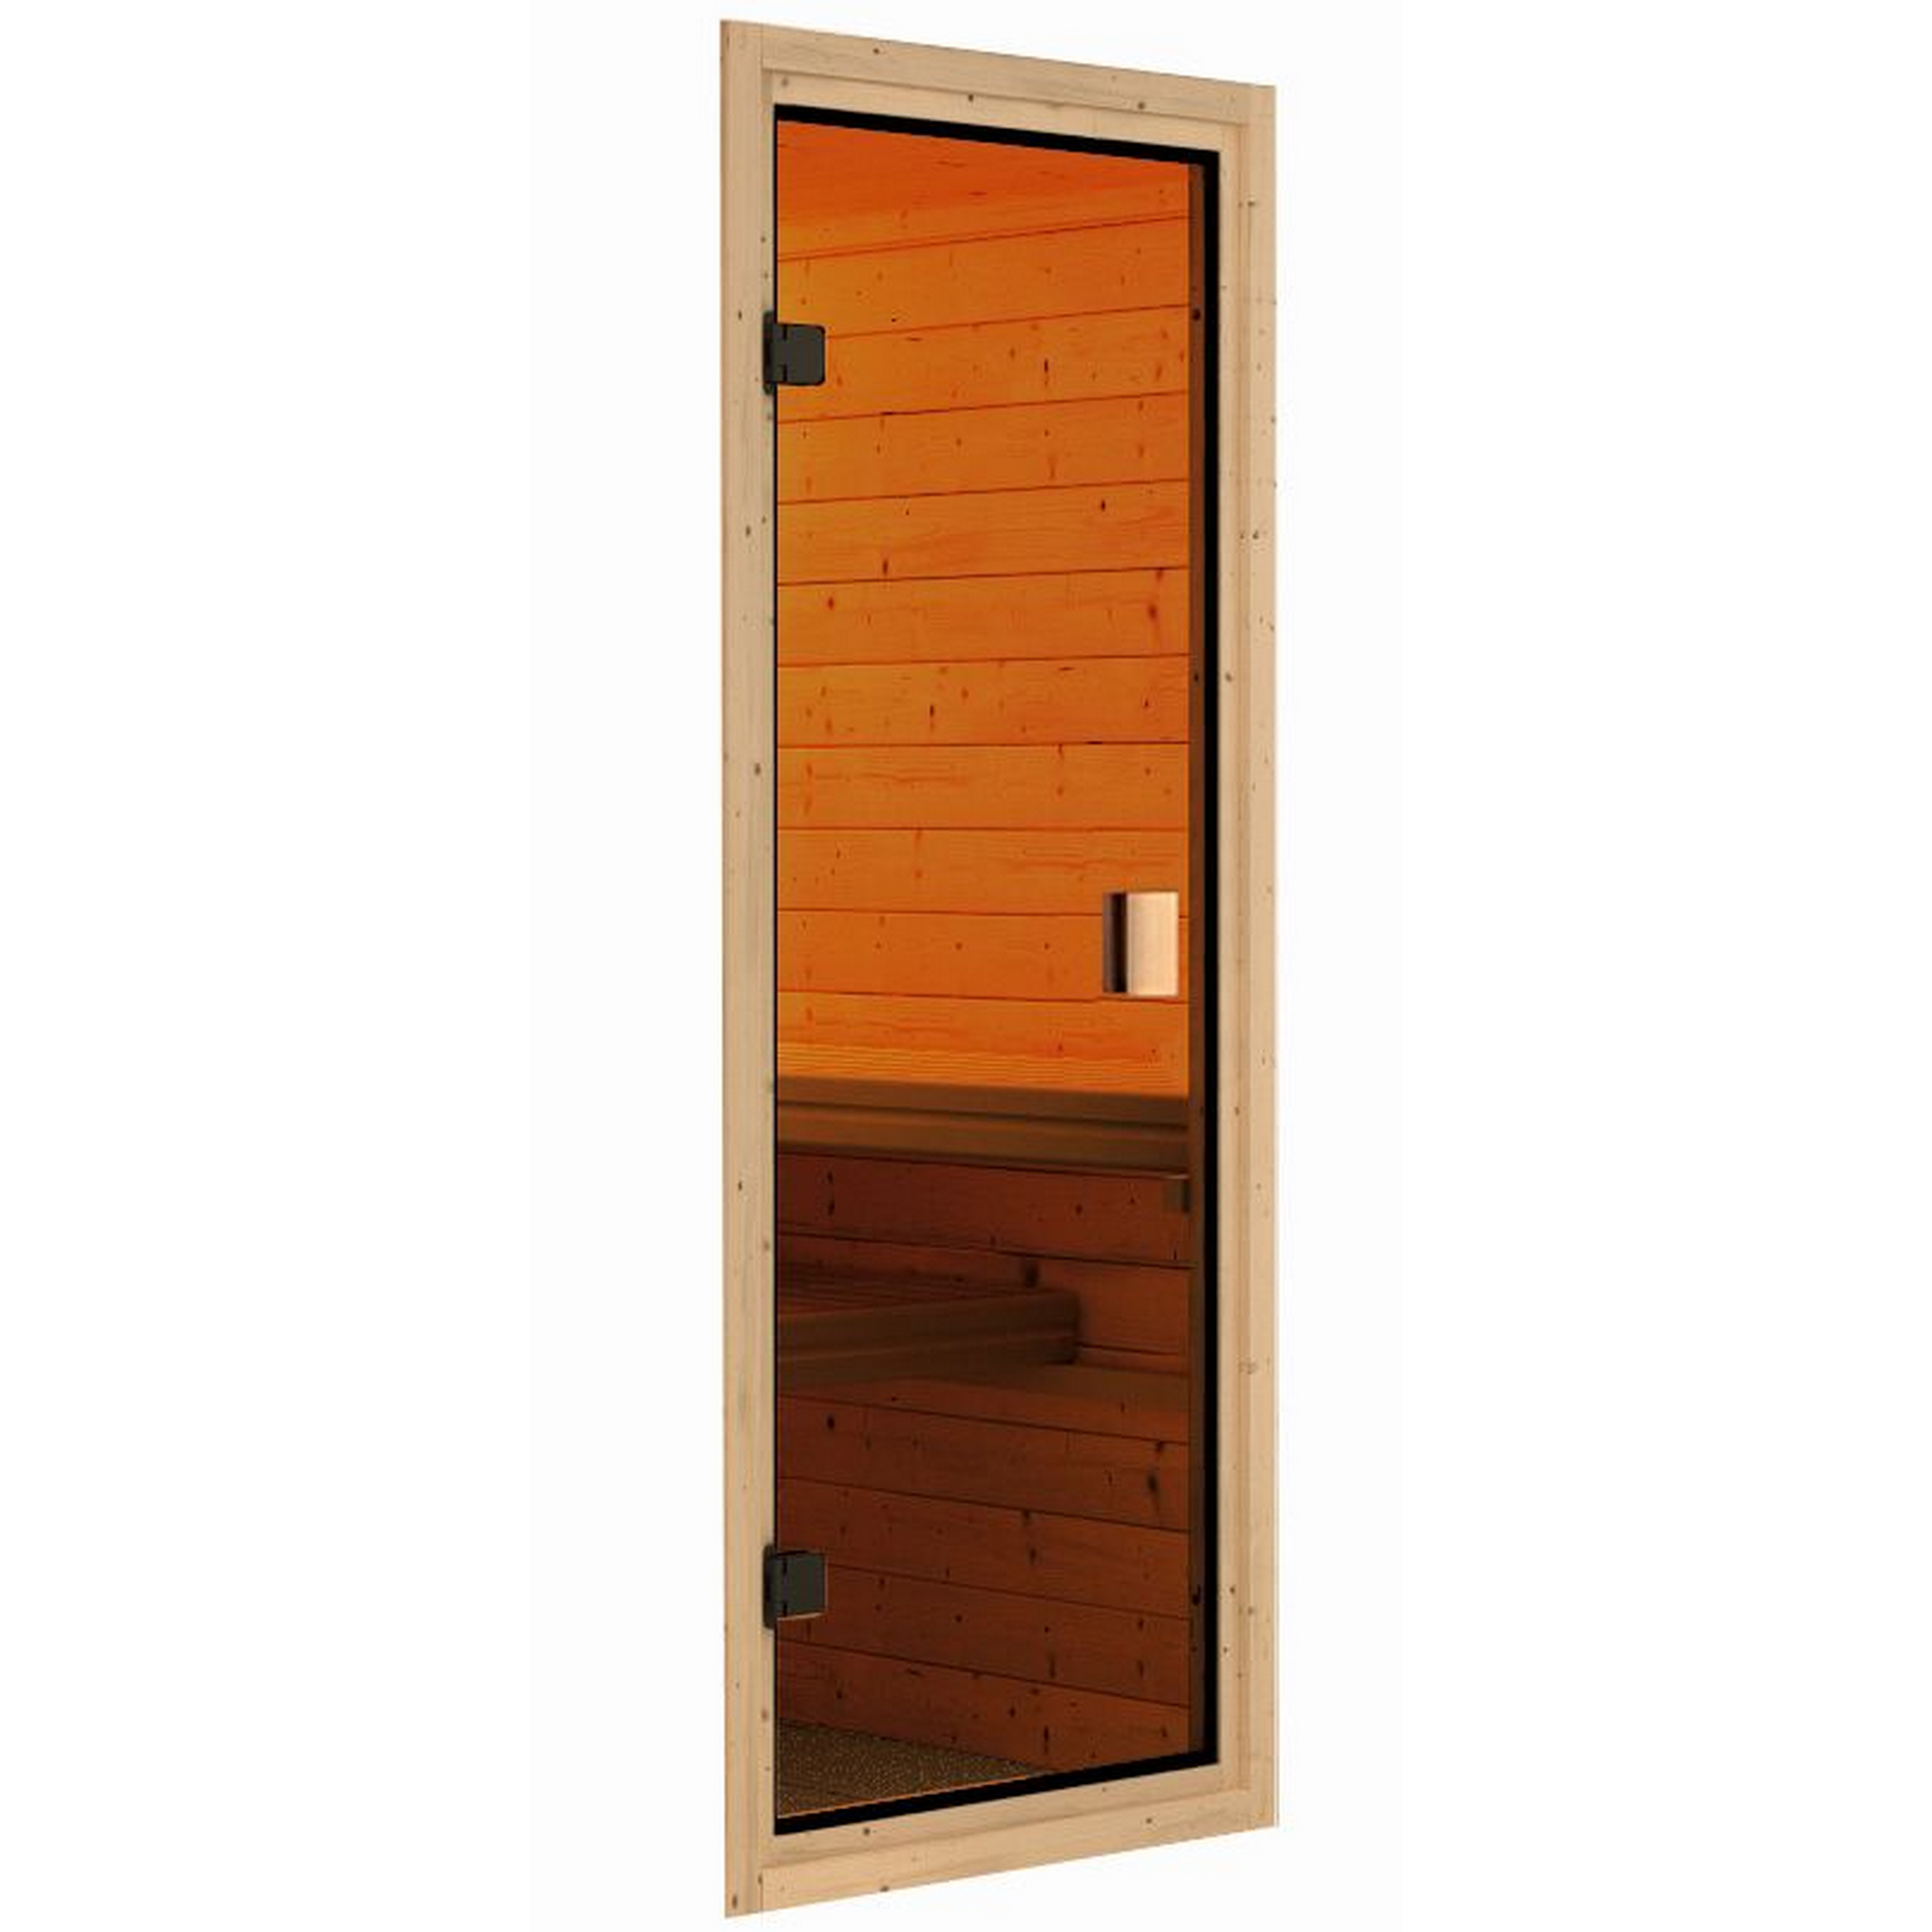 Sauna-Ganzglastür ESG klar bronziert 78 x 173 cm, für Sauna 'Classic' 38/40 mm + product picture